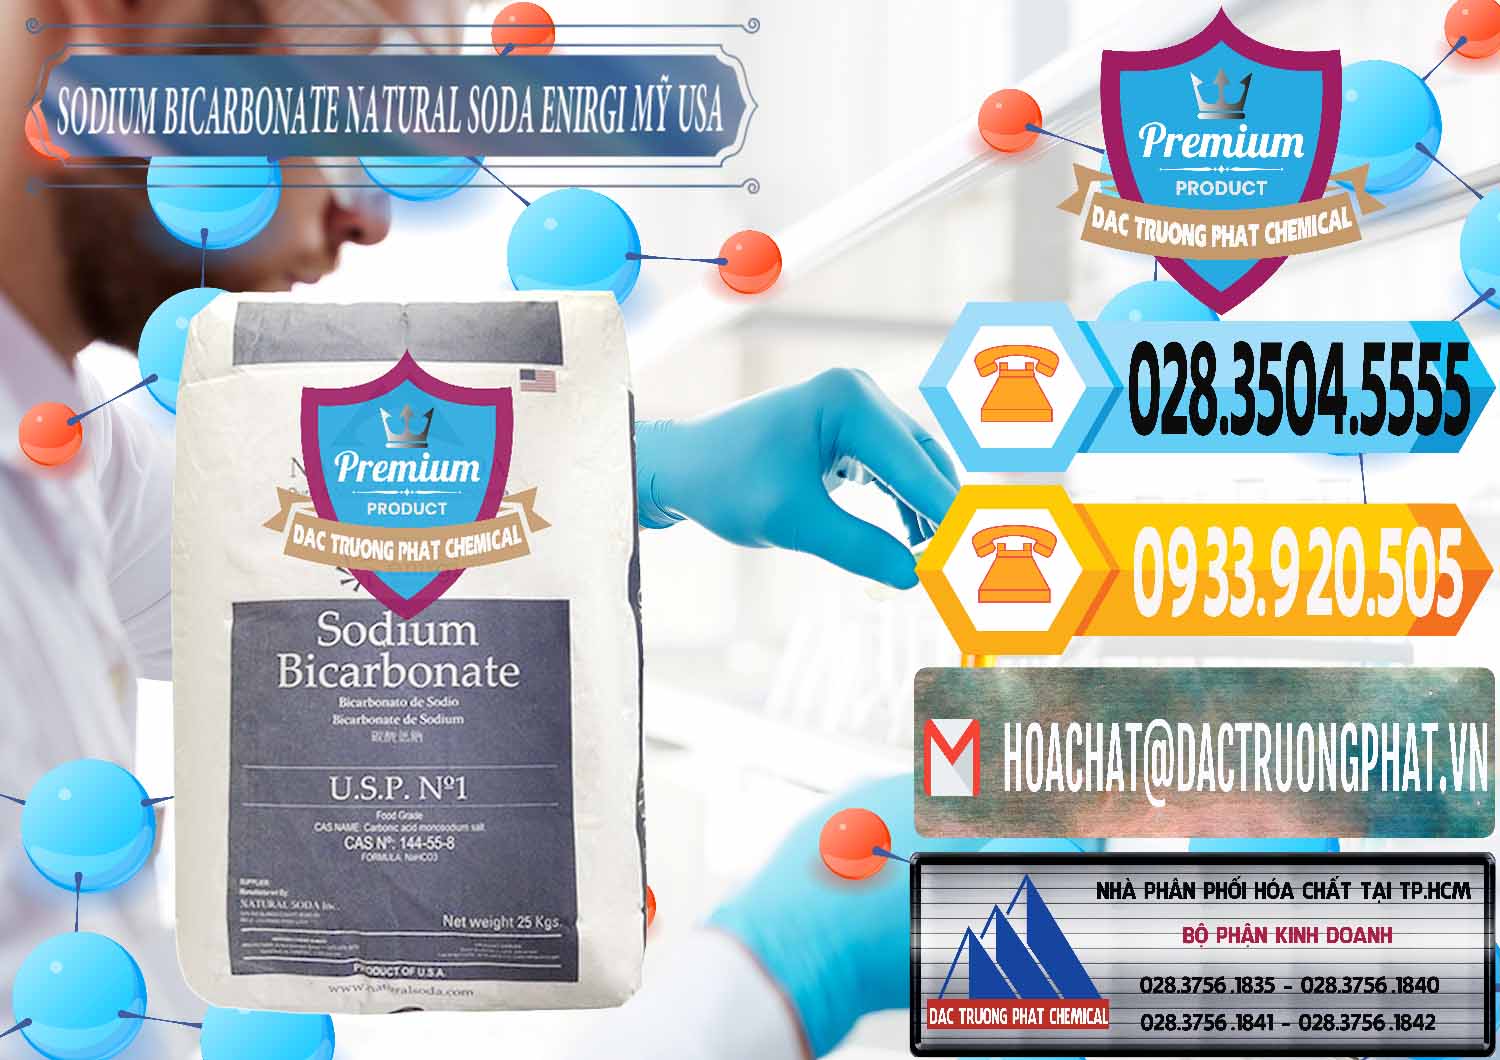 Công ty bán và cung ứng Sodium Bicarbonate – Bicar NaHCO3 Food Grade Natural Soda Enirgi Mỹ USA - 0257 - Nhà nhập khẩu và phân phối hóa chất tại TP.HCM - hoachattayrua.net